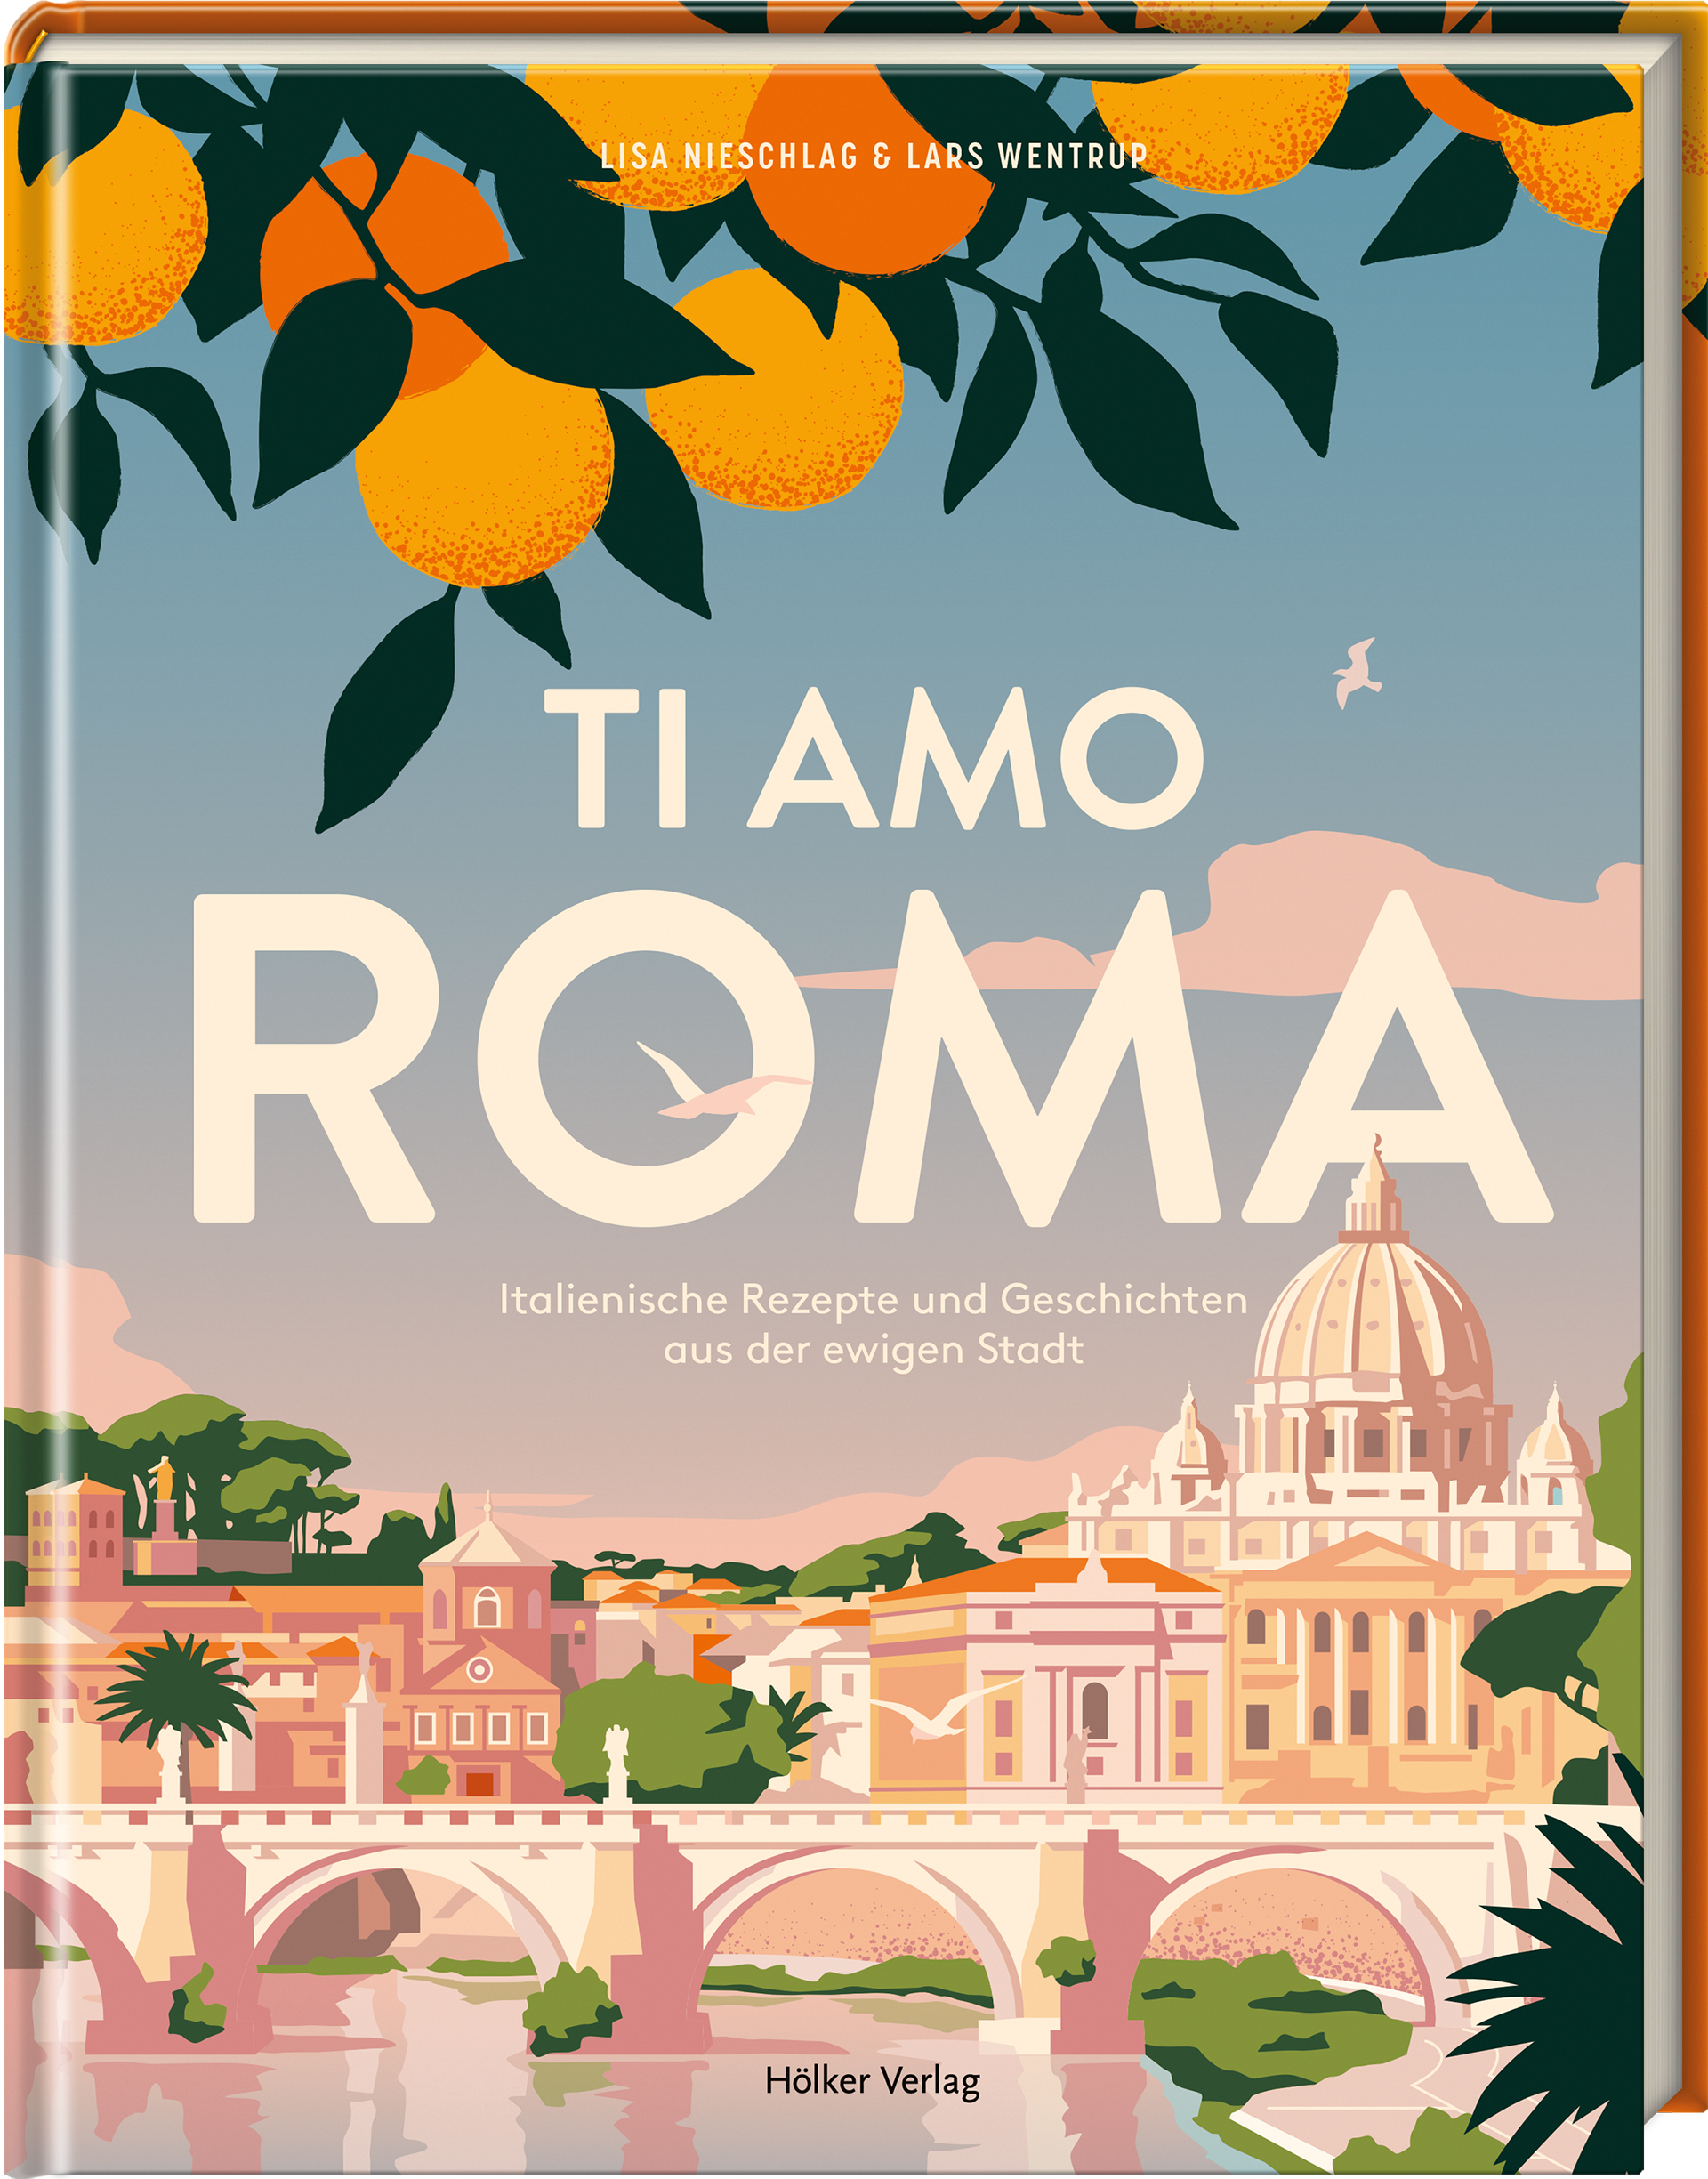 Ti amo Roma: Italienische Rezepte und Geschichten aus der Ewigen Stadt (Cover)